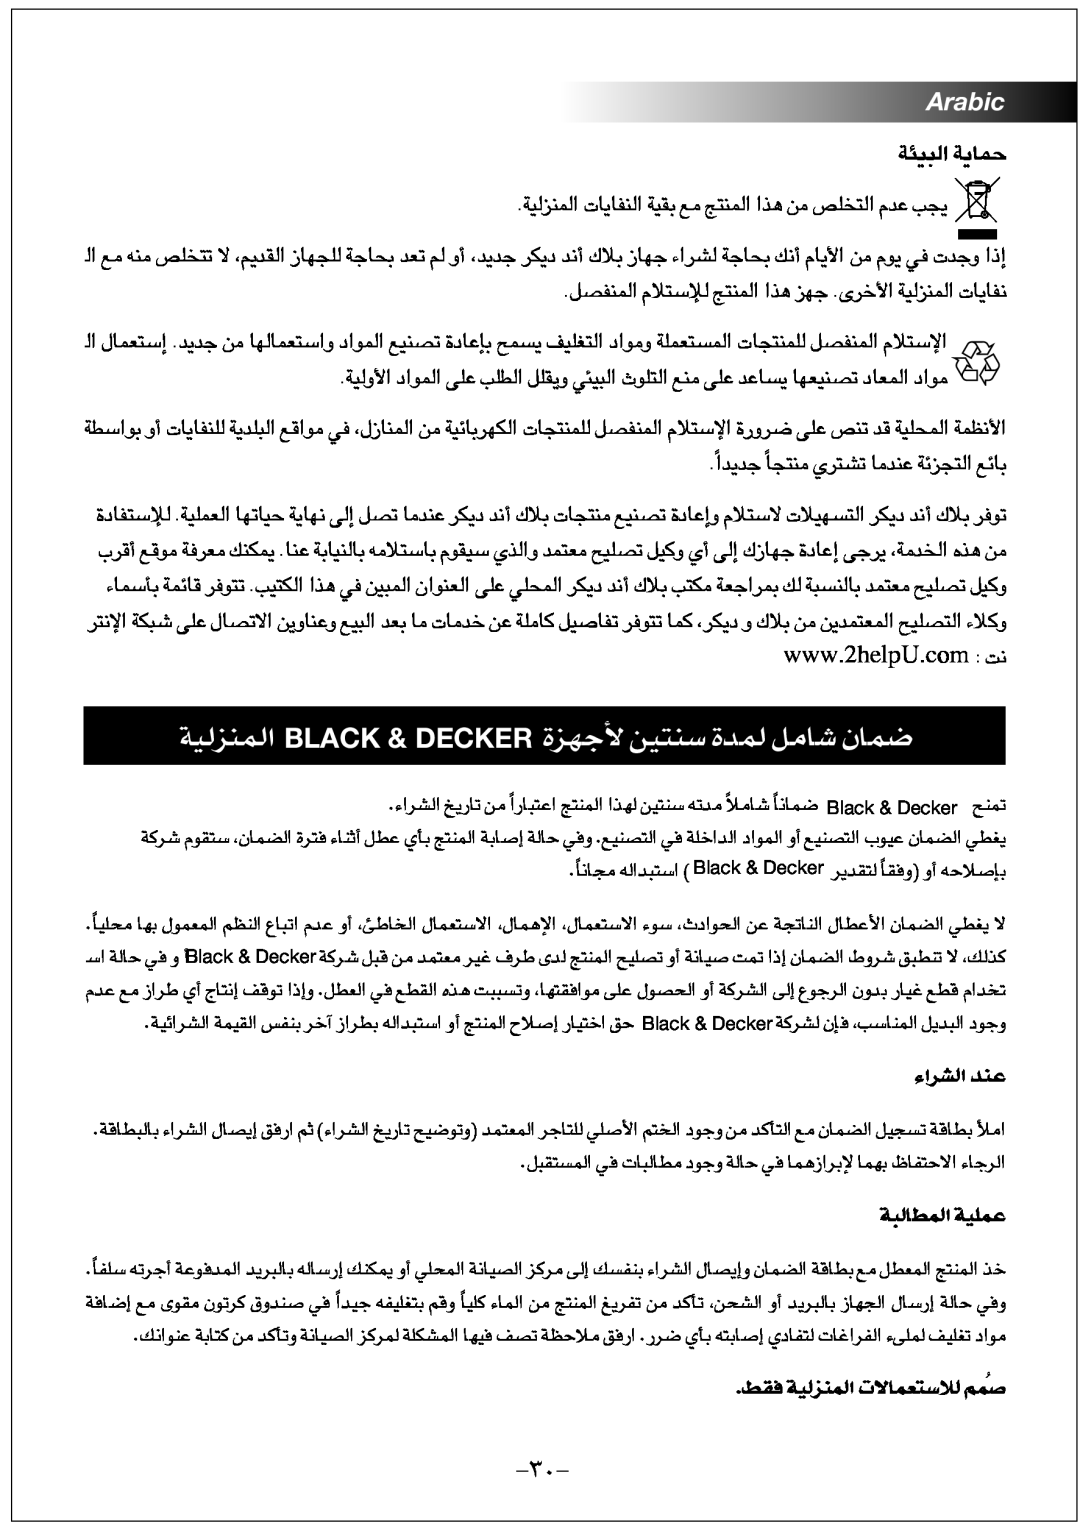 Black & Decker FX1000 …§Ne Os∑ßM …Lb∞ U±q LUÊ, Black & Decker, Ad«¡∞« ´Mb, Ij≠ OW∞LMe∞« FLUô‹∑öß∞ ÅÔLr, W∞∂Ldu∞« ´Lkow 